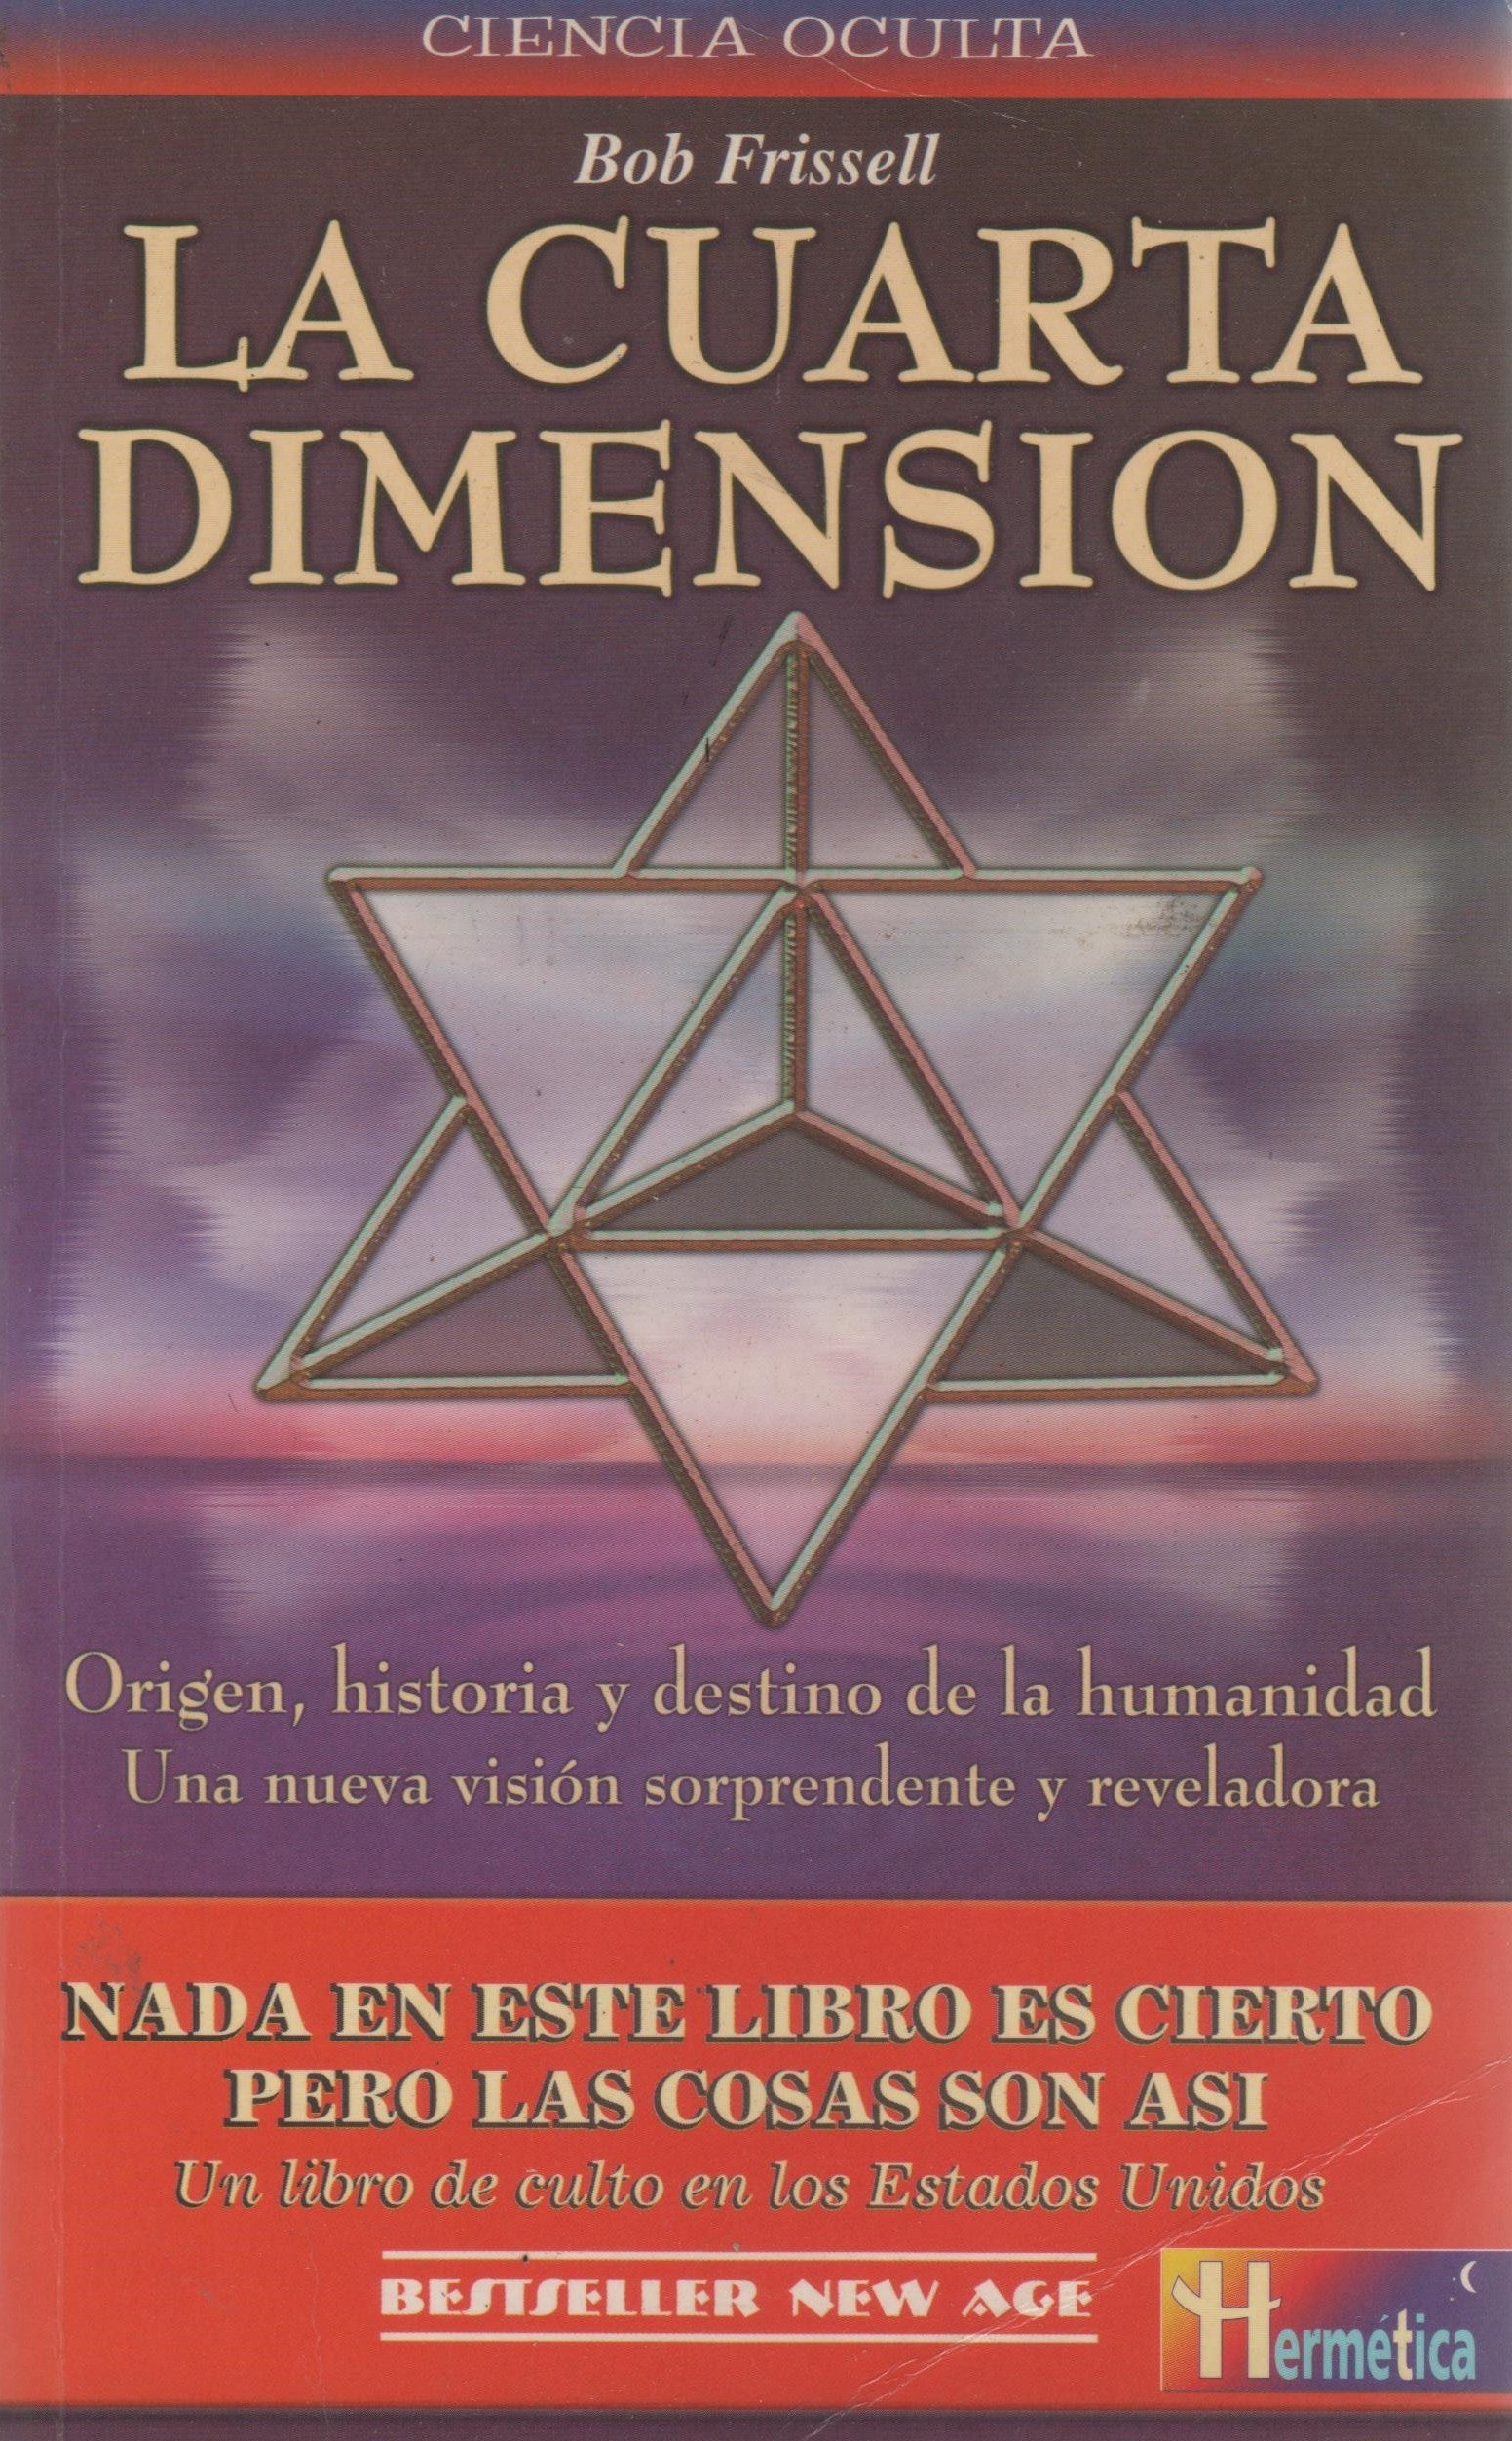 La cuarta dimensión